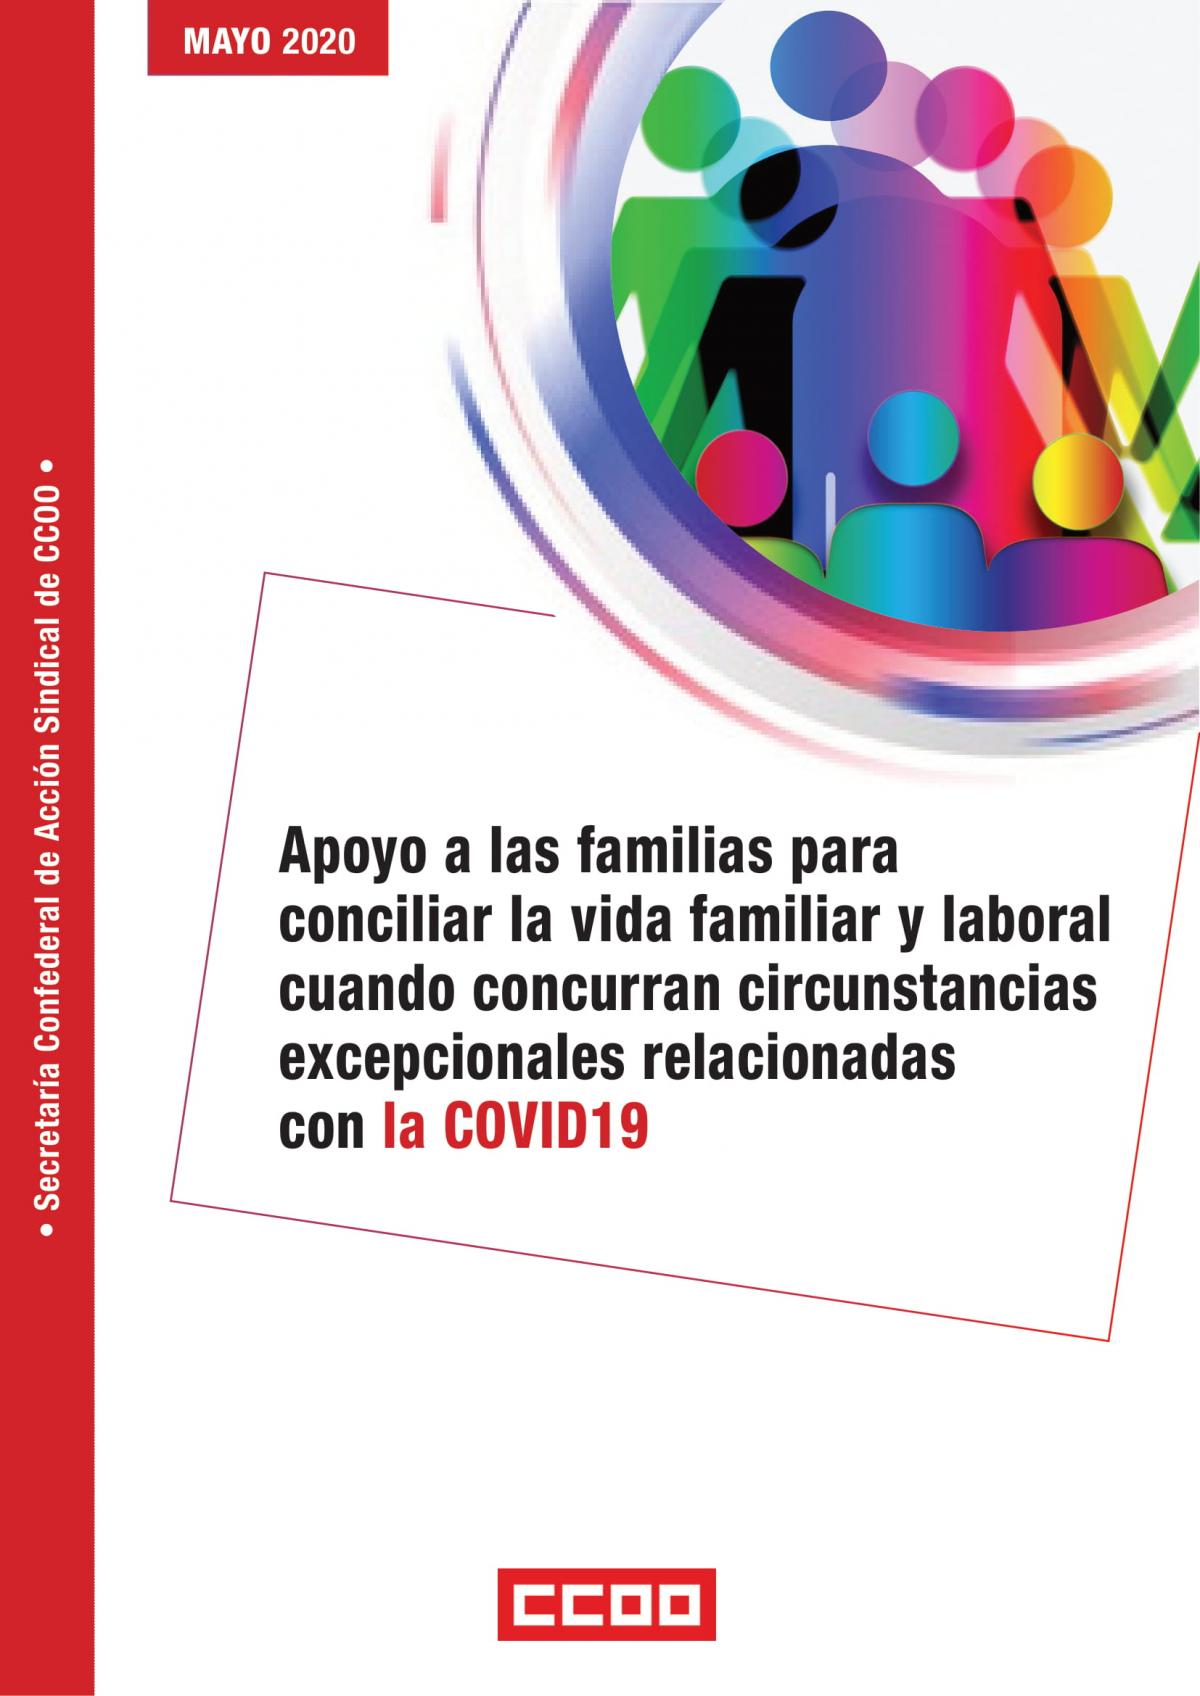 Apoyo a las familias para conciliar la vida familiar y laboral cuando concurran circunstancias excepcionales relacionadas con la COVID19